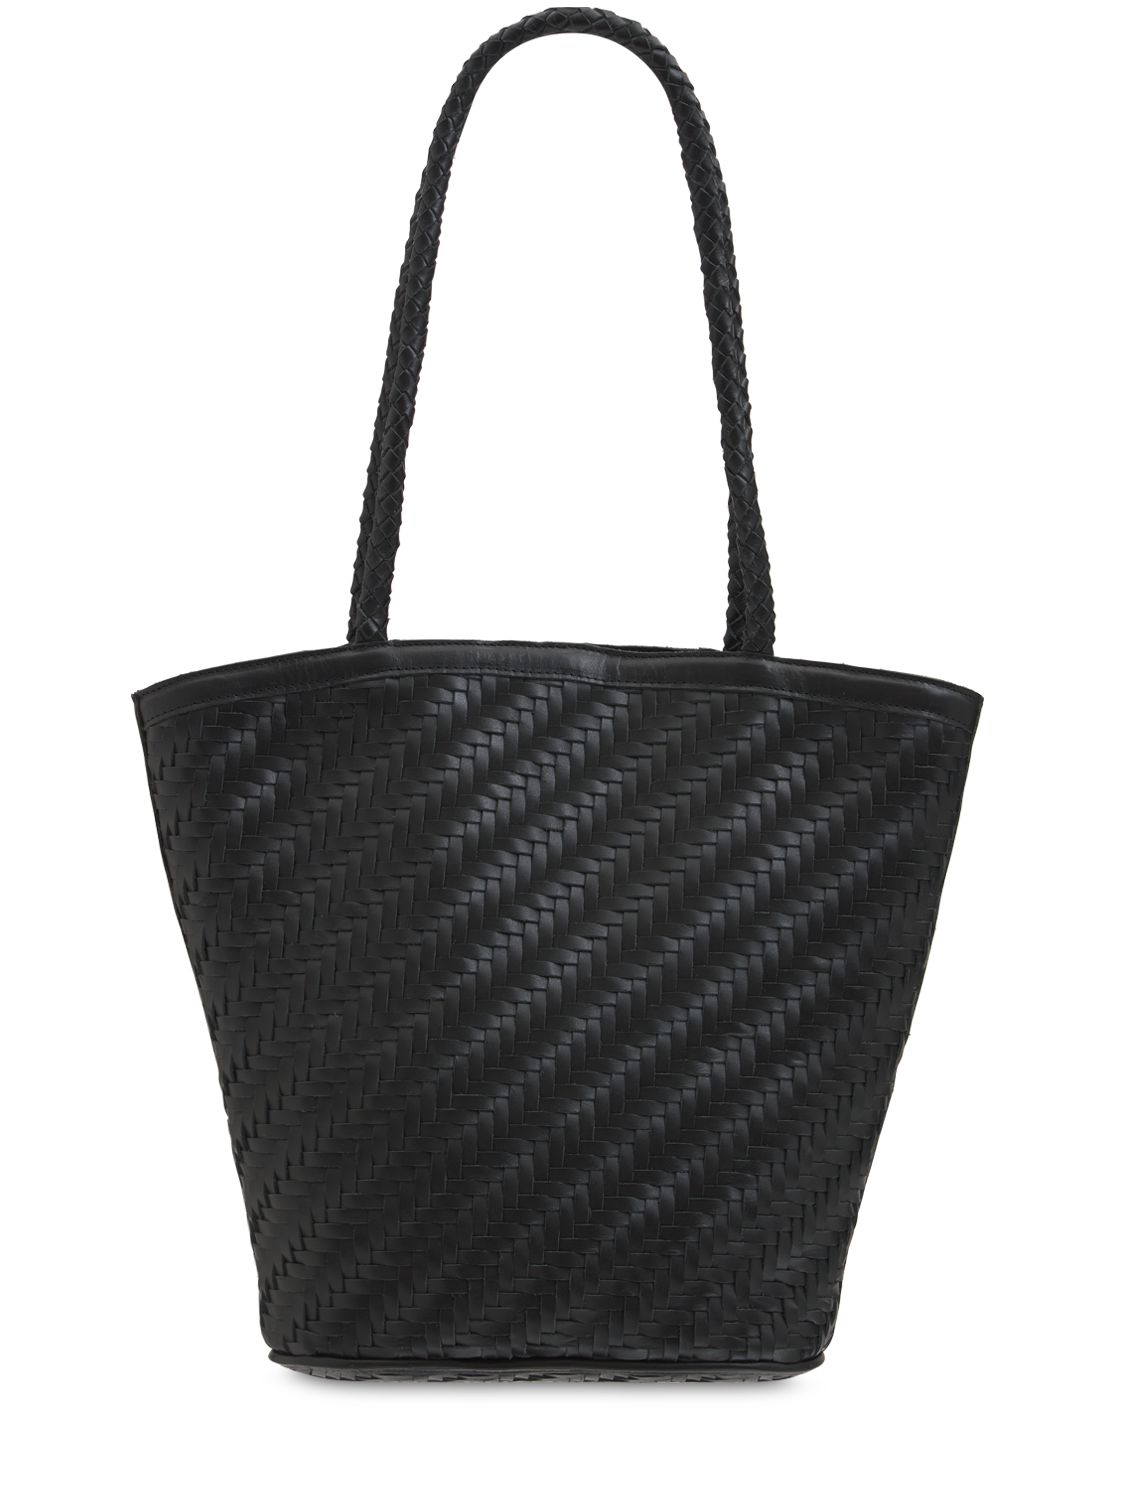 Jeanne Handwoven Leather Shoulder Bag